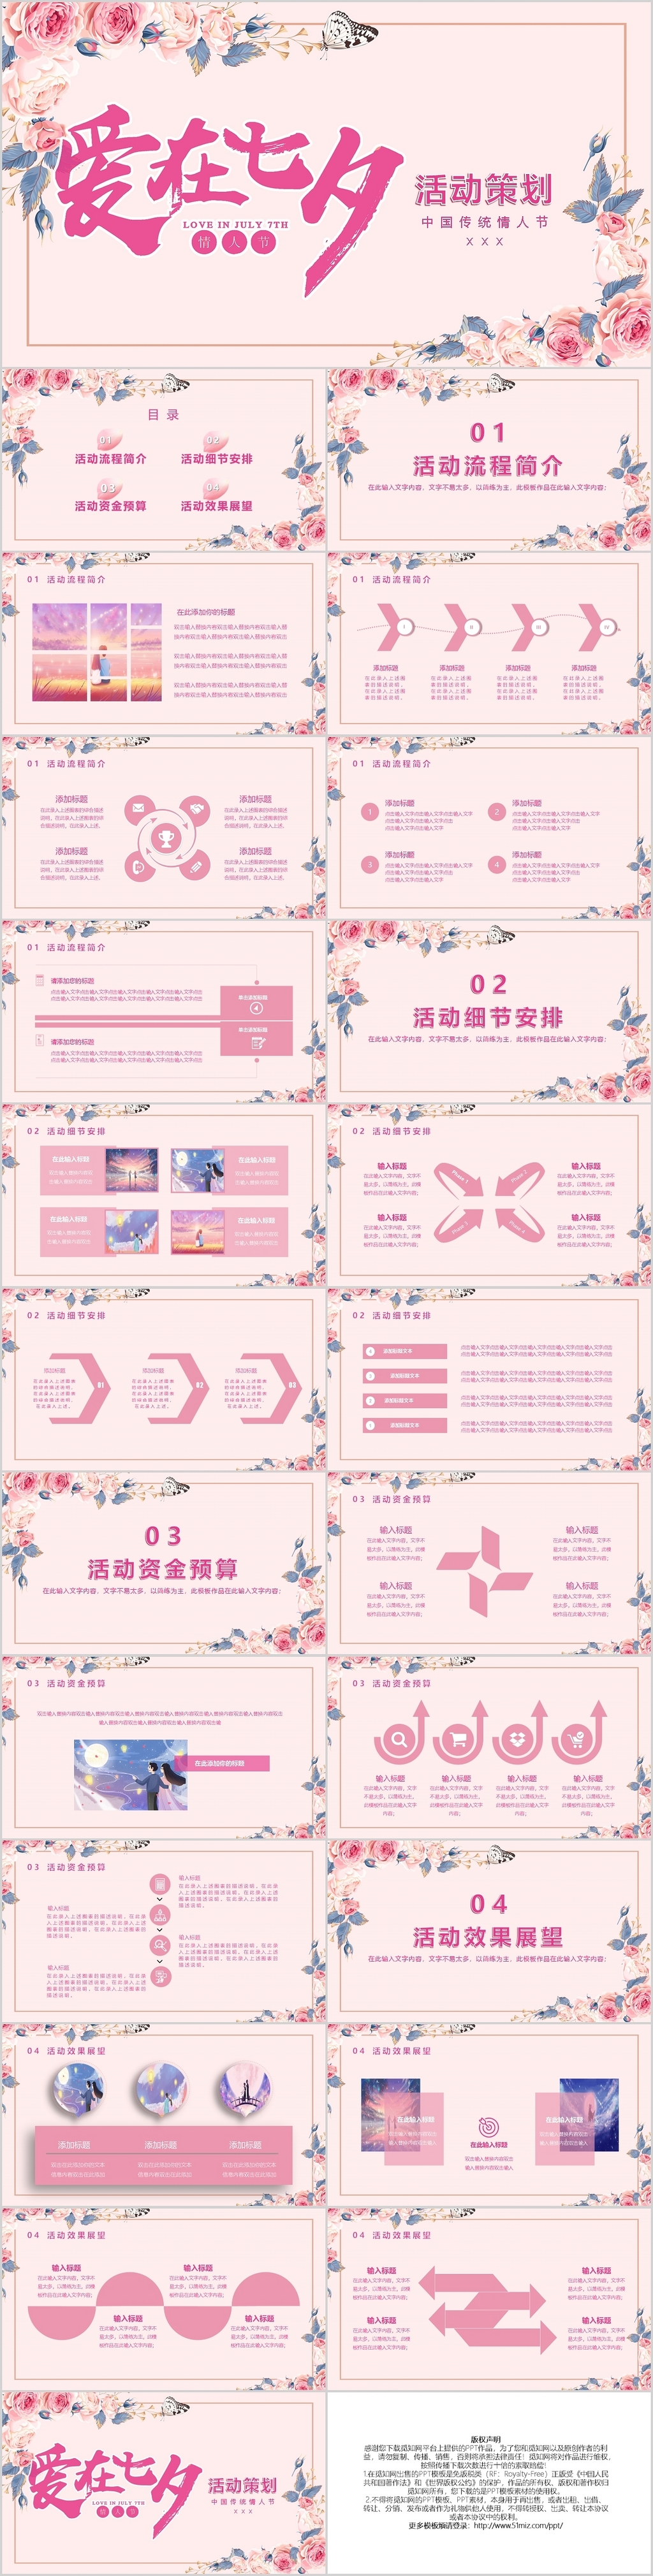 粉色花卉浪漫七夕情人节活动策划PPT模板宣传PPT动态PPT